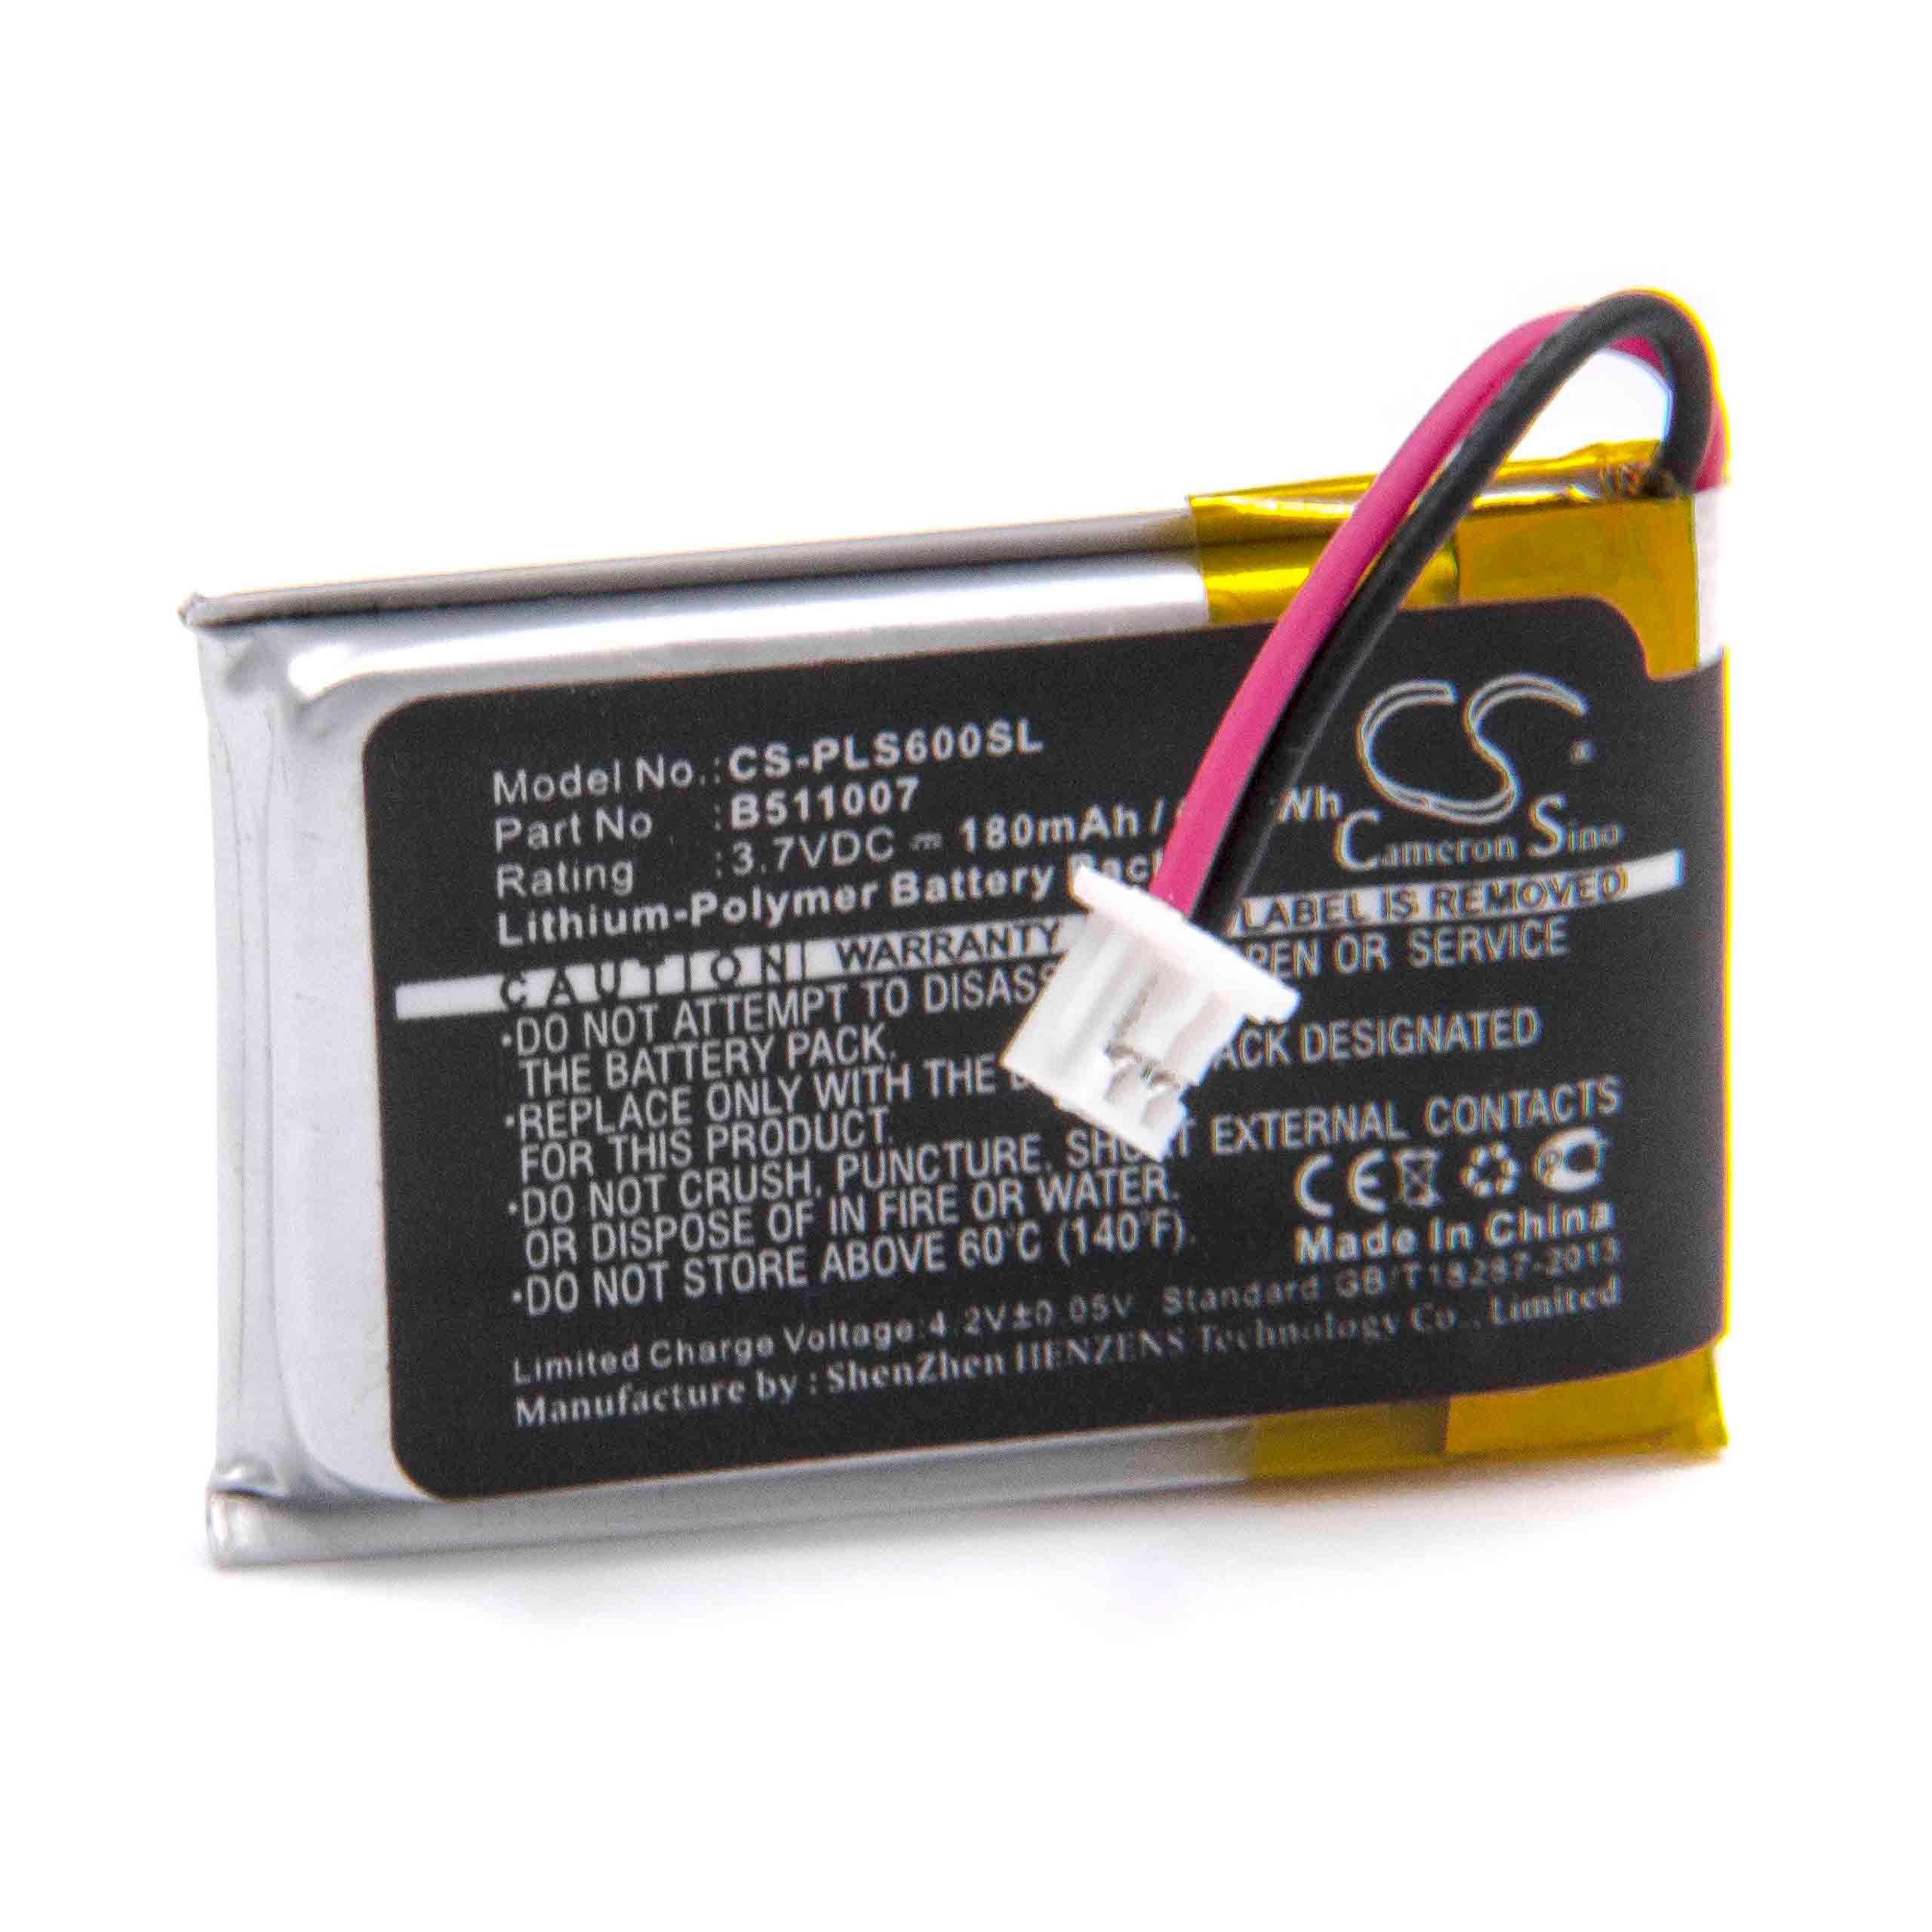 Batterie remplace Plantronics 452128, 6535801, B511007 pour casque audio - 180mAh 3,7V Li-polymère